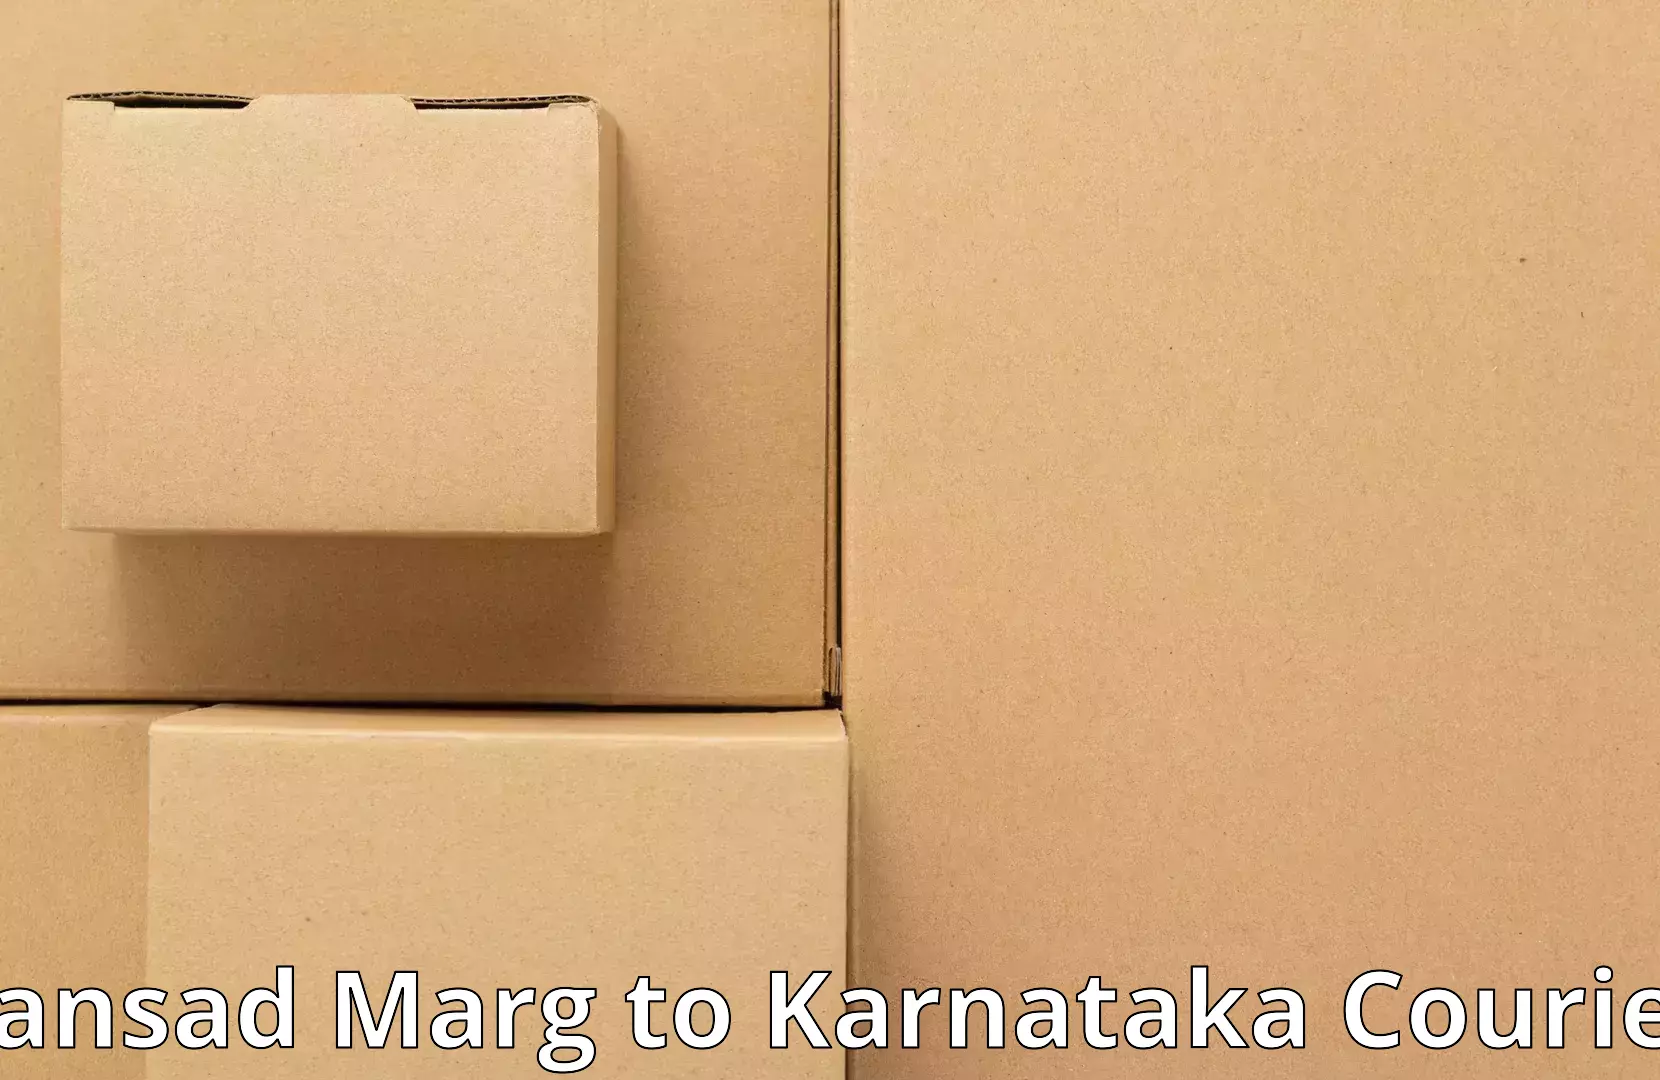 Professional moving company Sansad Marg to Yelburga